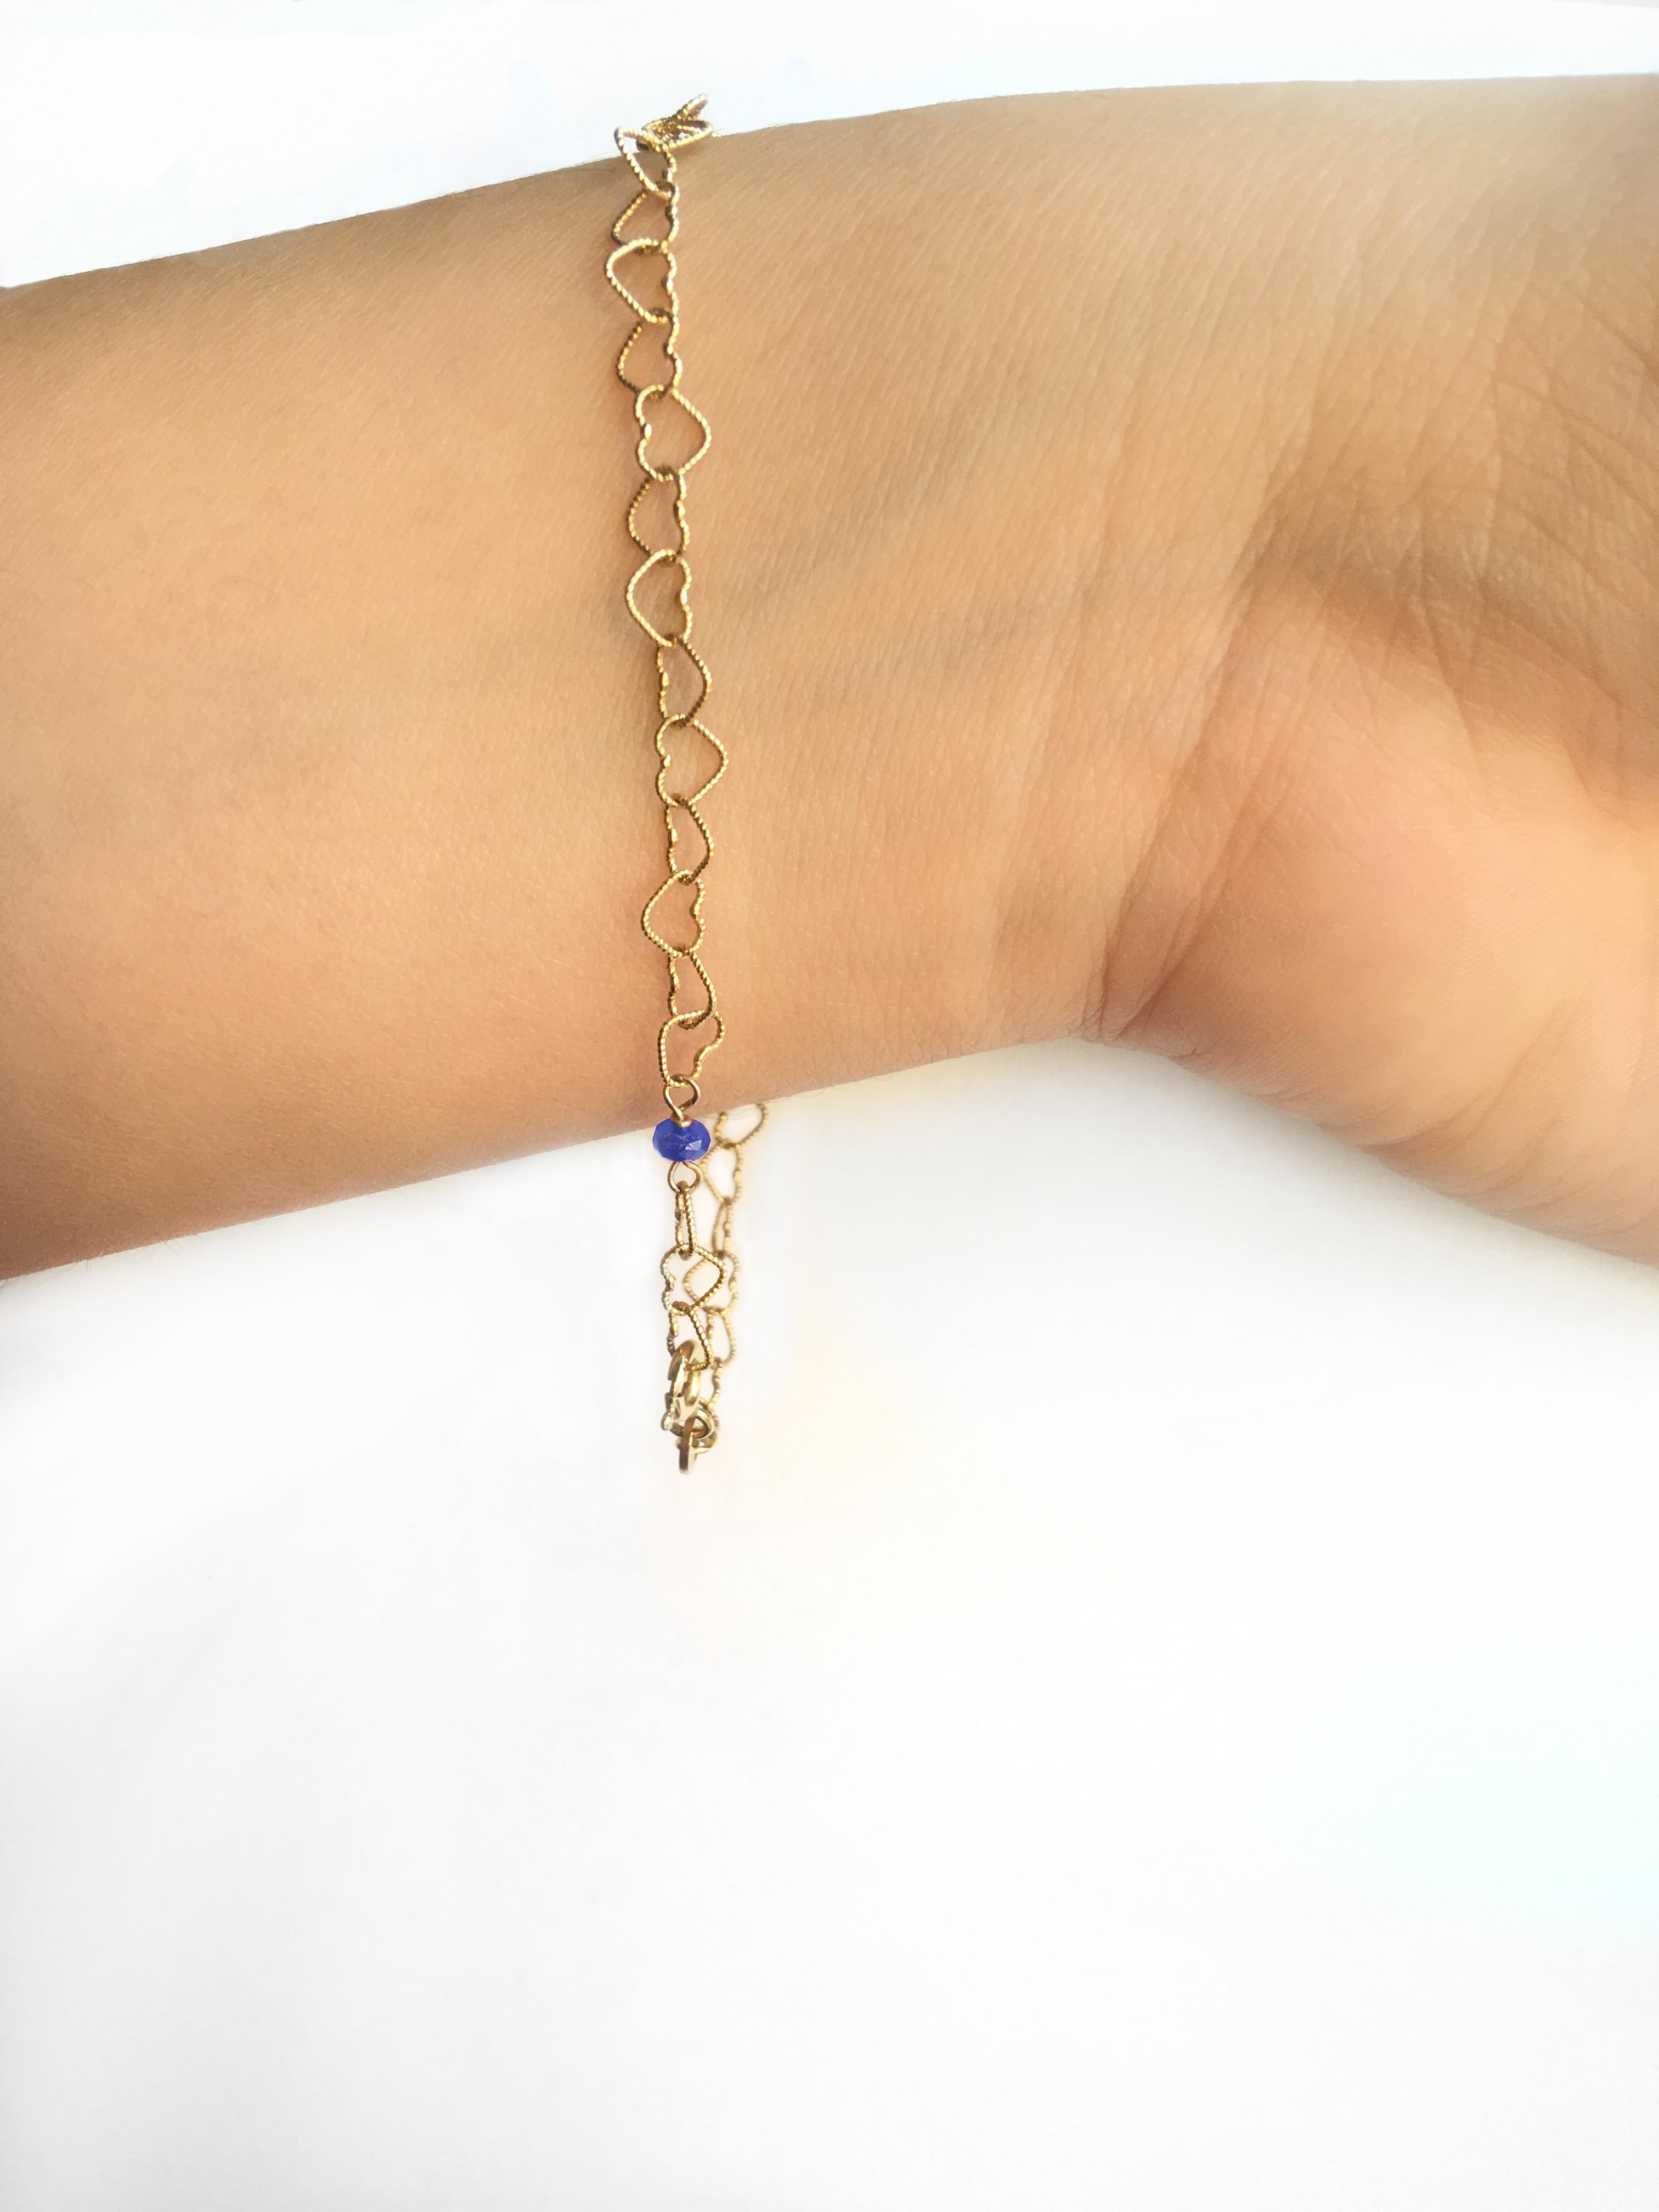 Bracelet de style romantique en or jaune 18 carats avec perles en saphir de 0,30 carat et petits cœurs.
La chaîne est reliée à la main et légèrement martelée pour épouser la forme parfaite du bracelet. Un bracelet de style romantique avec une perle